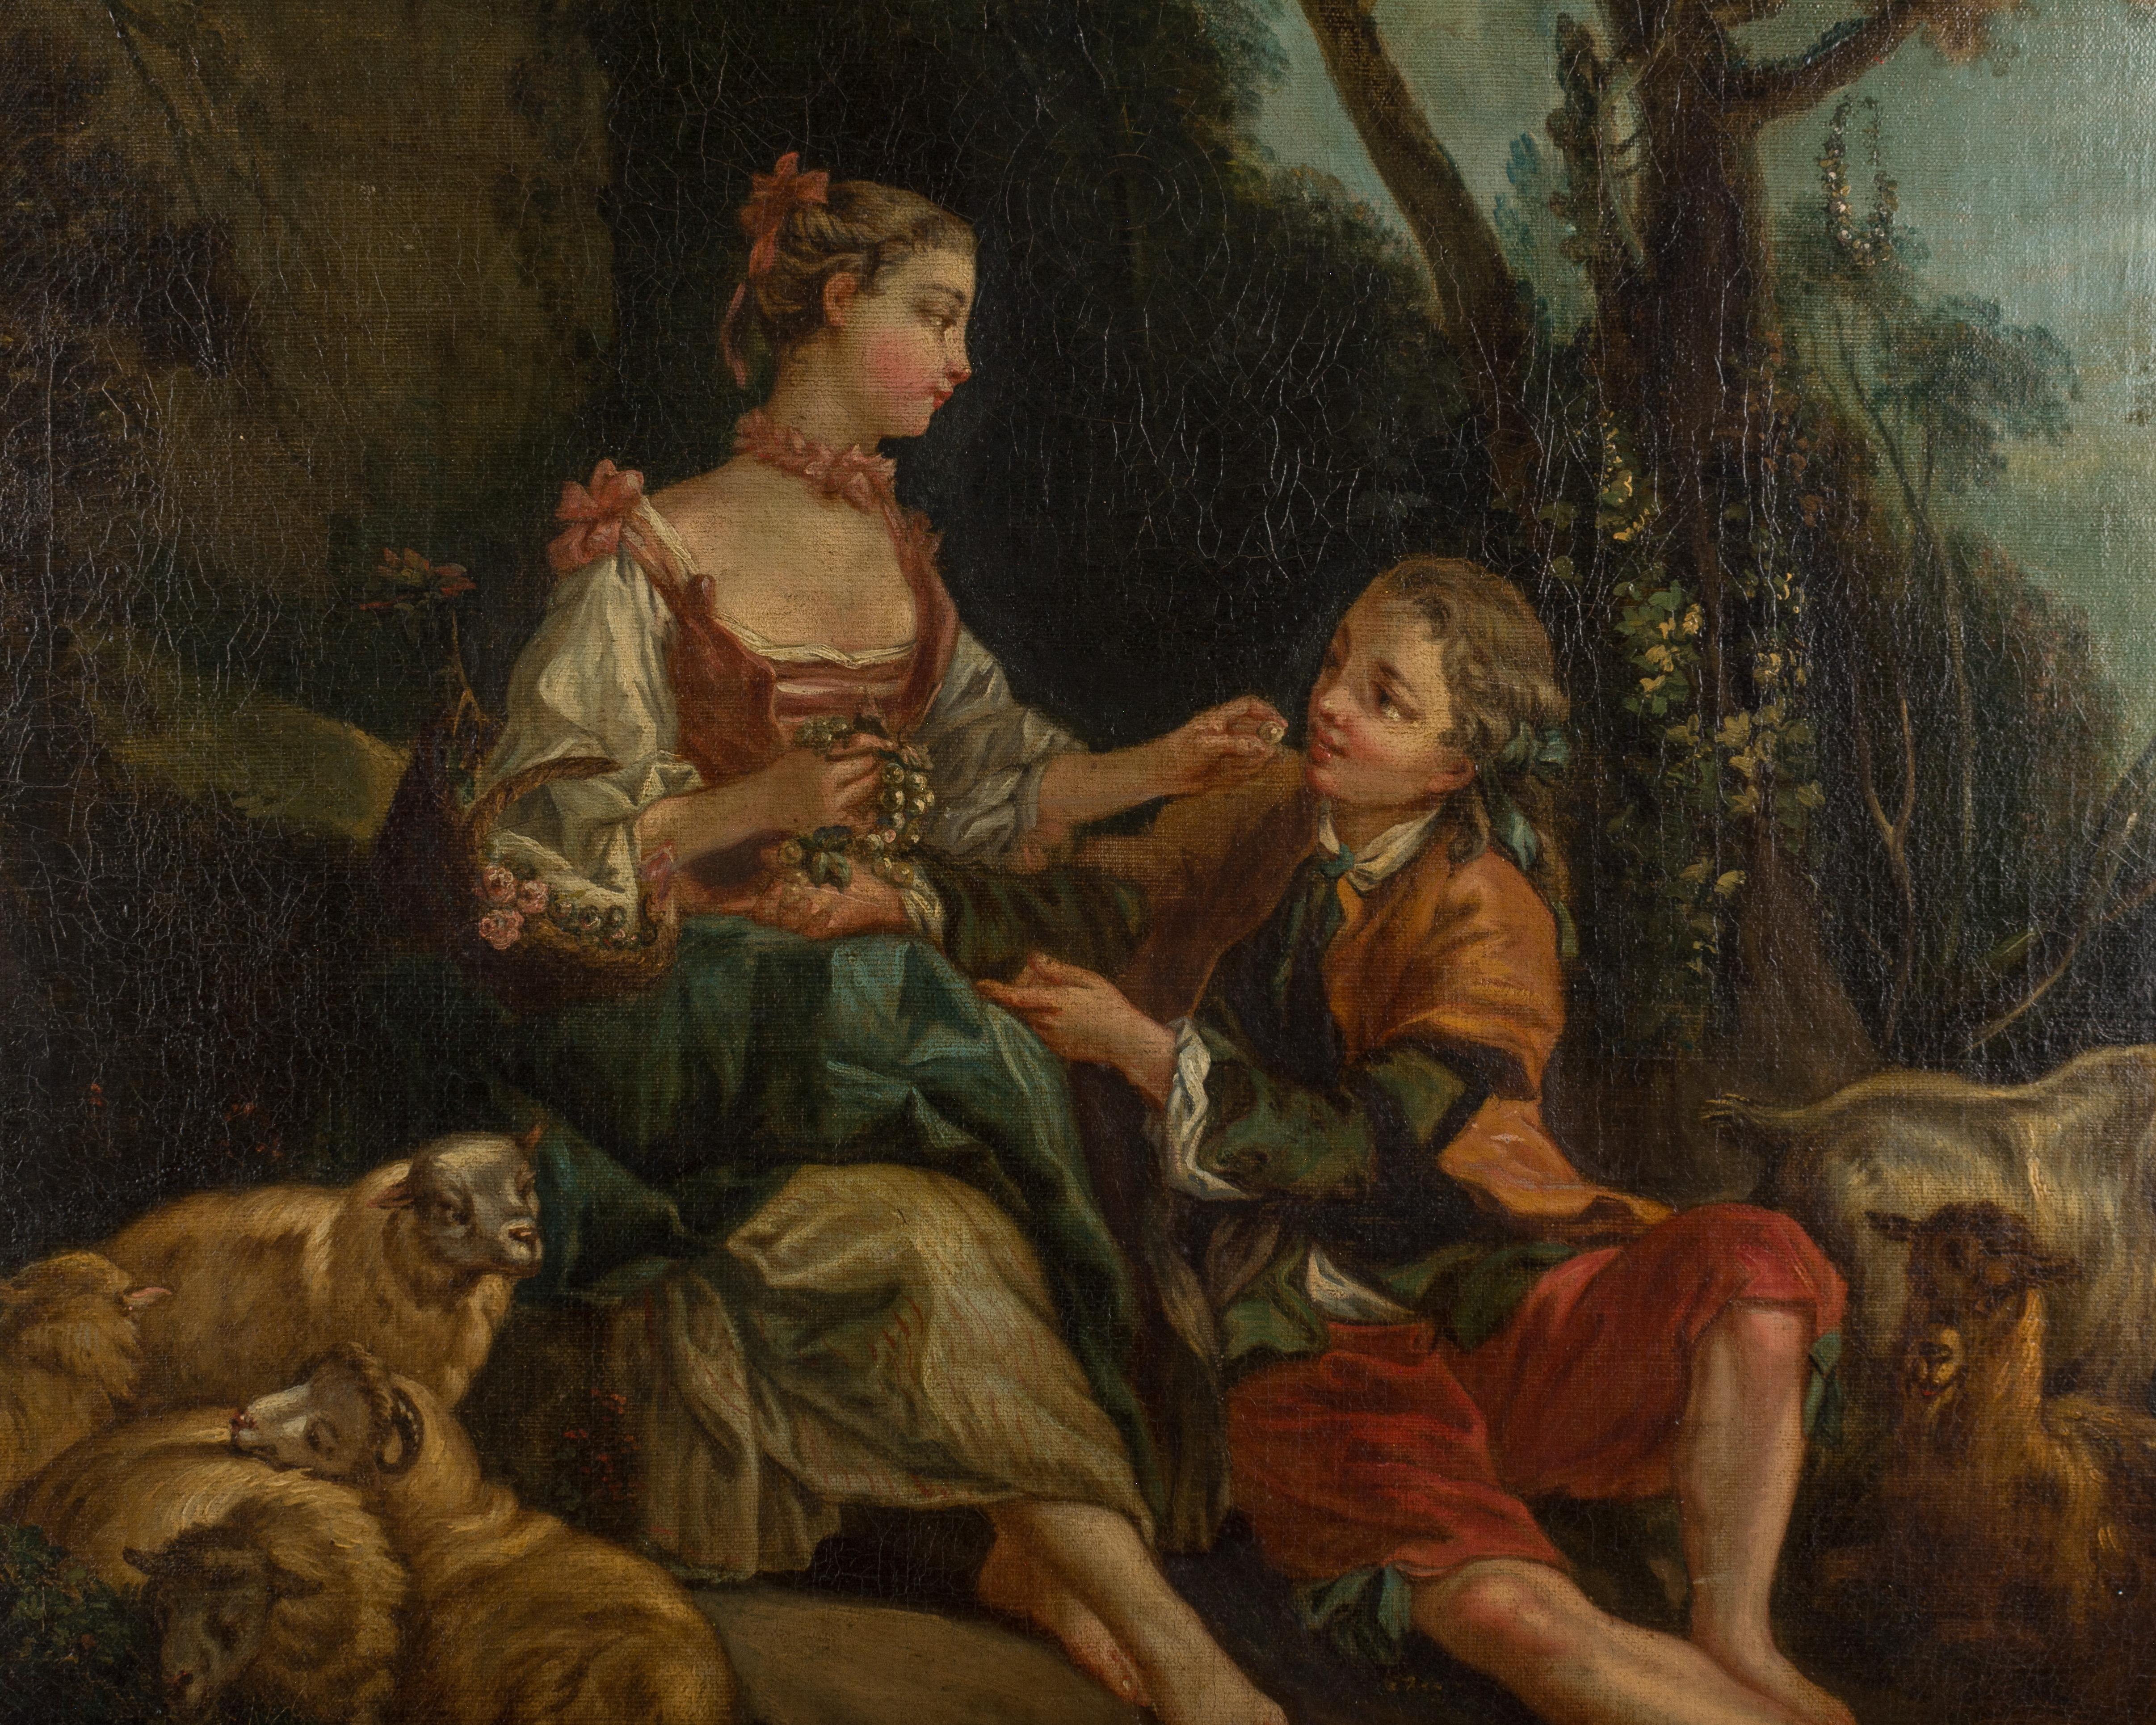 Ein französisches Gemälde aus dem späten 18. Jahrhundert, das ein romantisches Paar in einer pastoralen Umgebung darstellt. Öl auf Leinwand. Nicht signiert. Originaler vergoldeter Holzrahmen. Kleine Reparatur an der Leinwand in der linken oberen